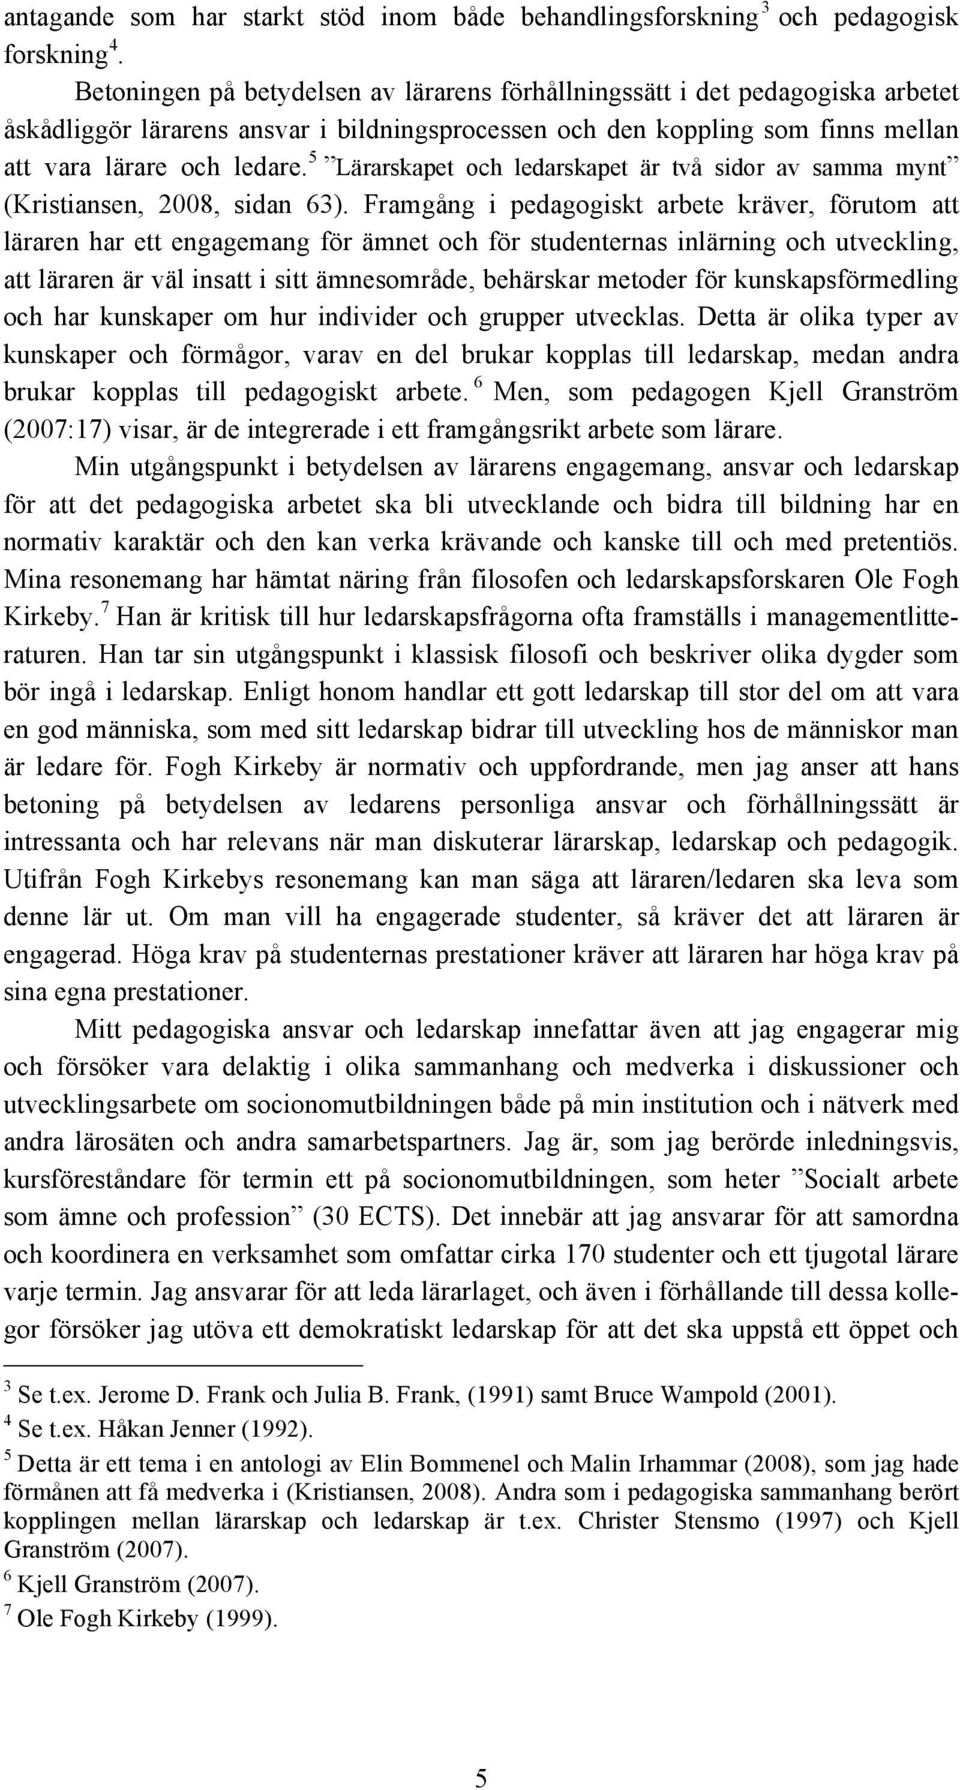 5 Lärarskapet och ledarskapet är två sidor av samma mynt (Kristiansen, 2008, sidan 63).